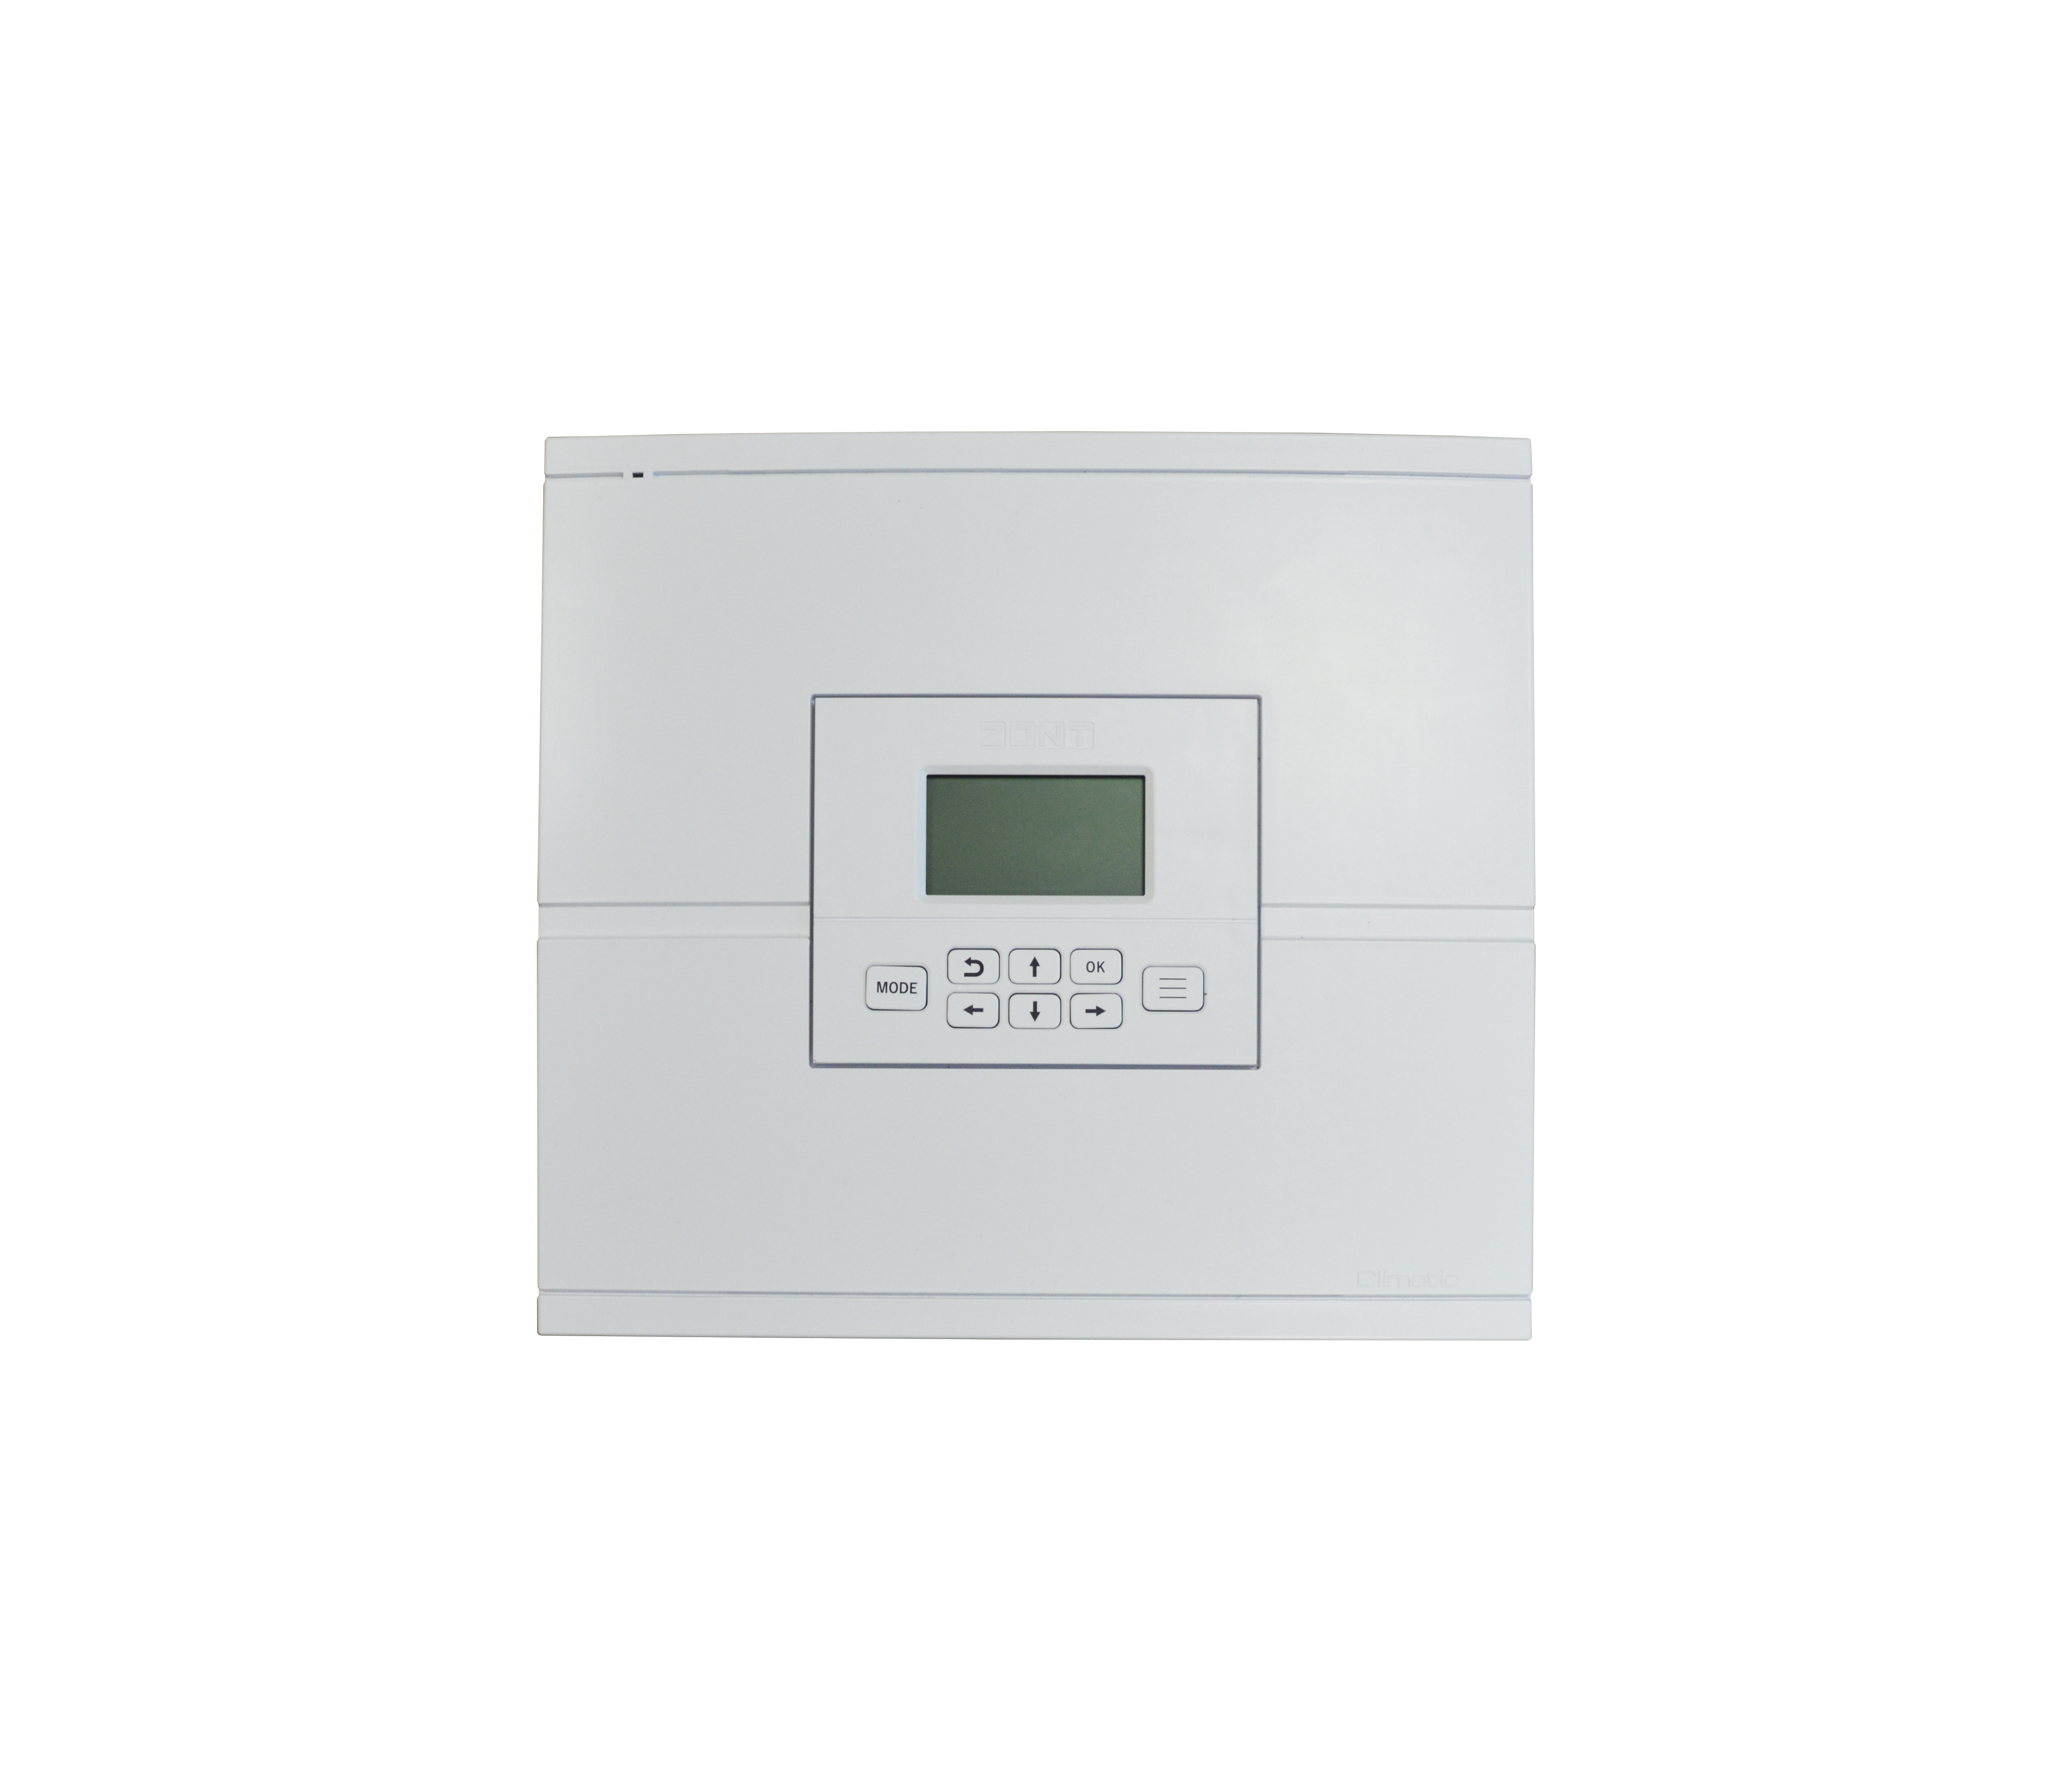 Погодозависемый автоматический регулятор для многоконтурных систем отопления ZONT Climatic 1.1 (741)